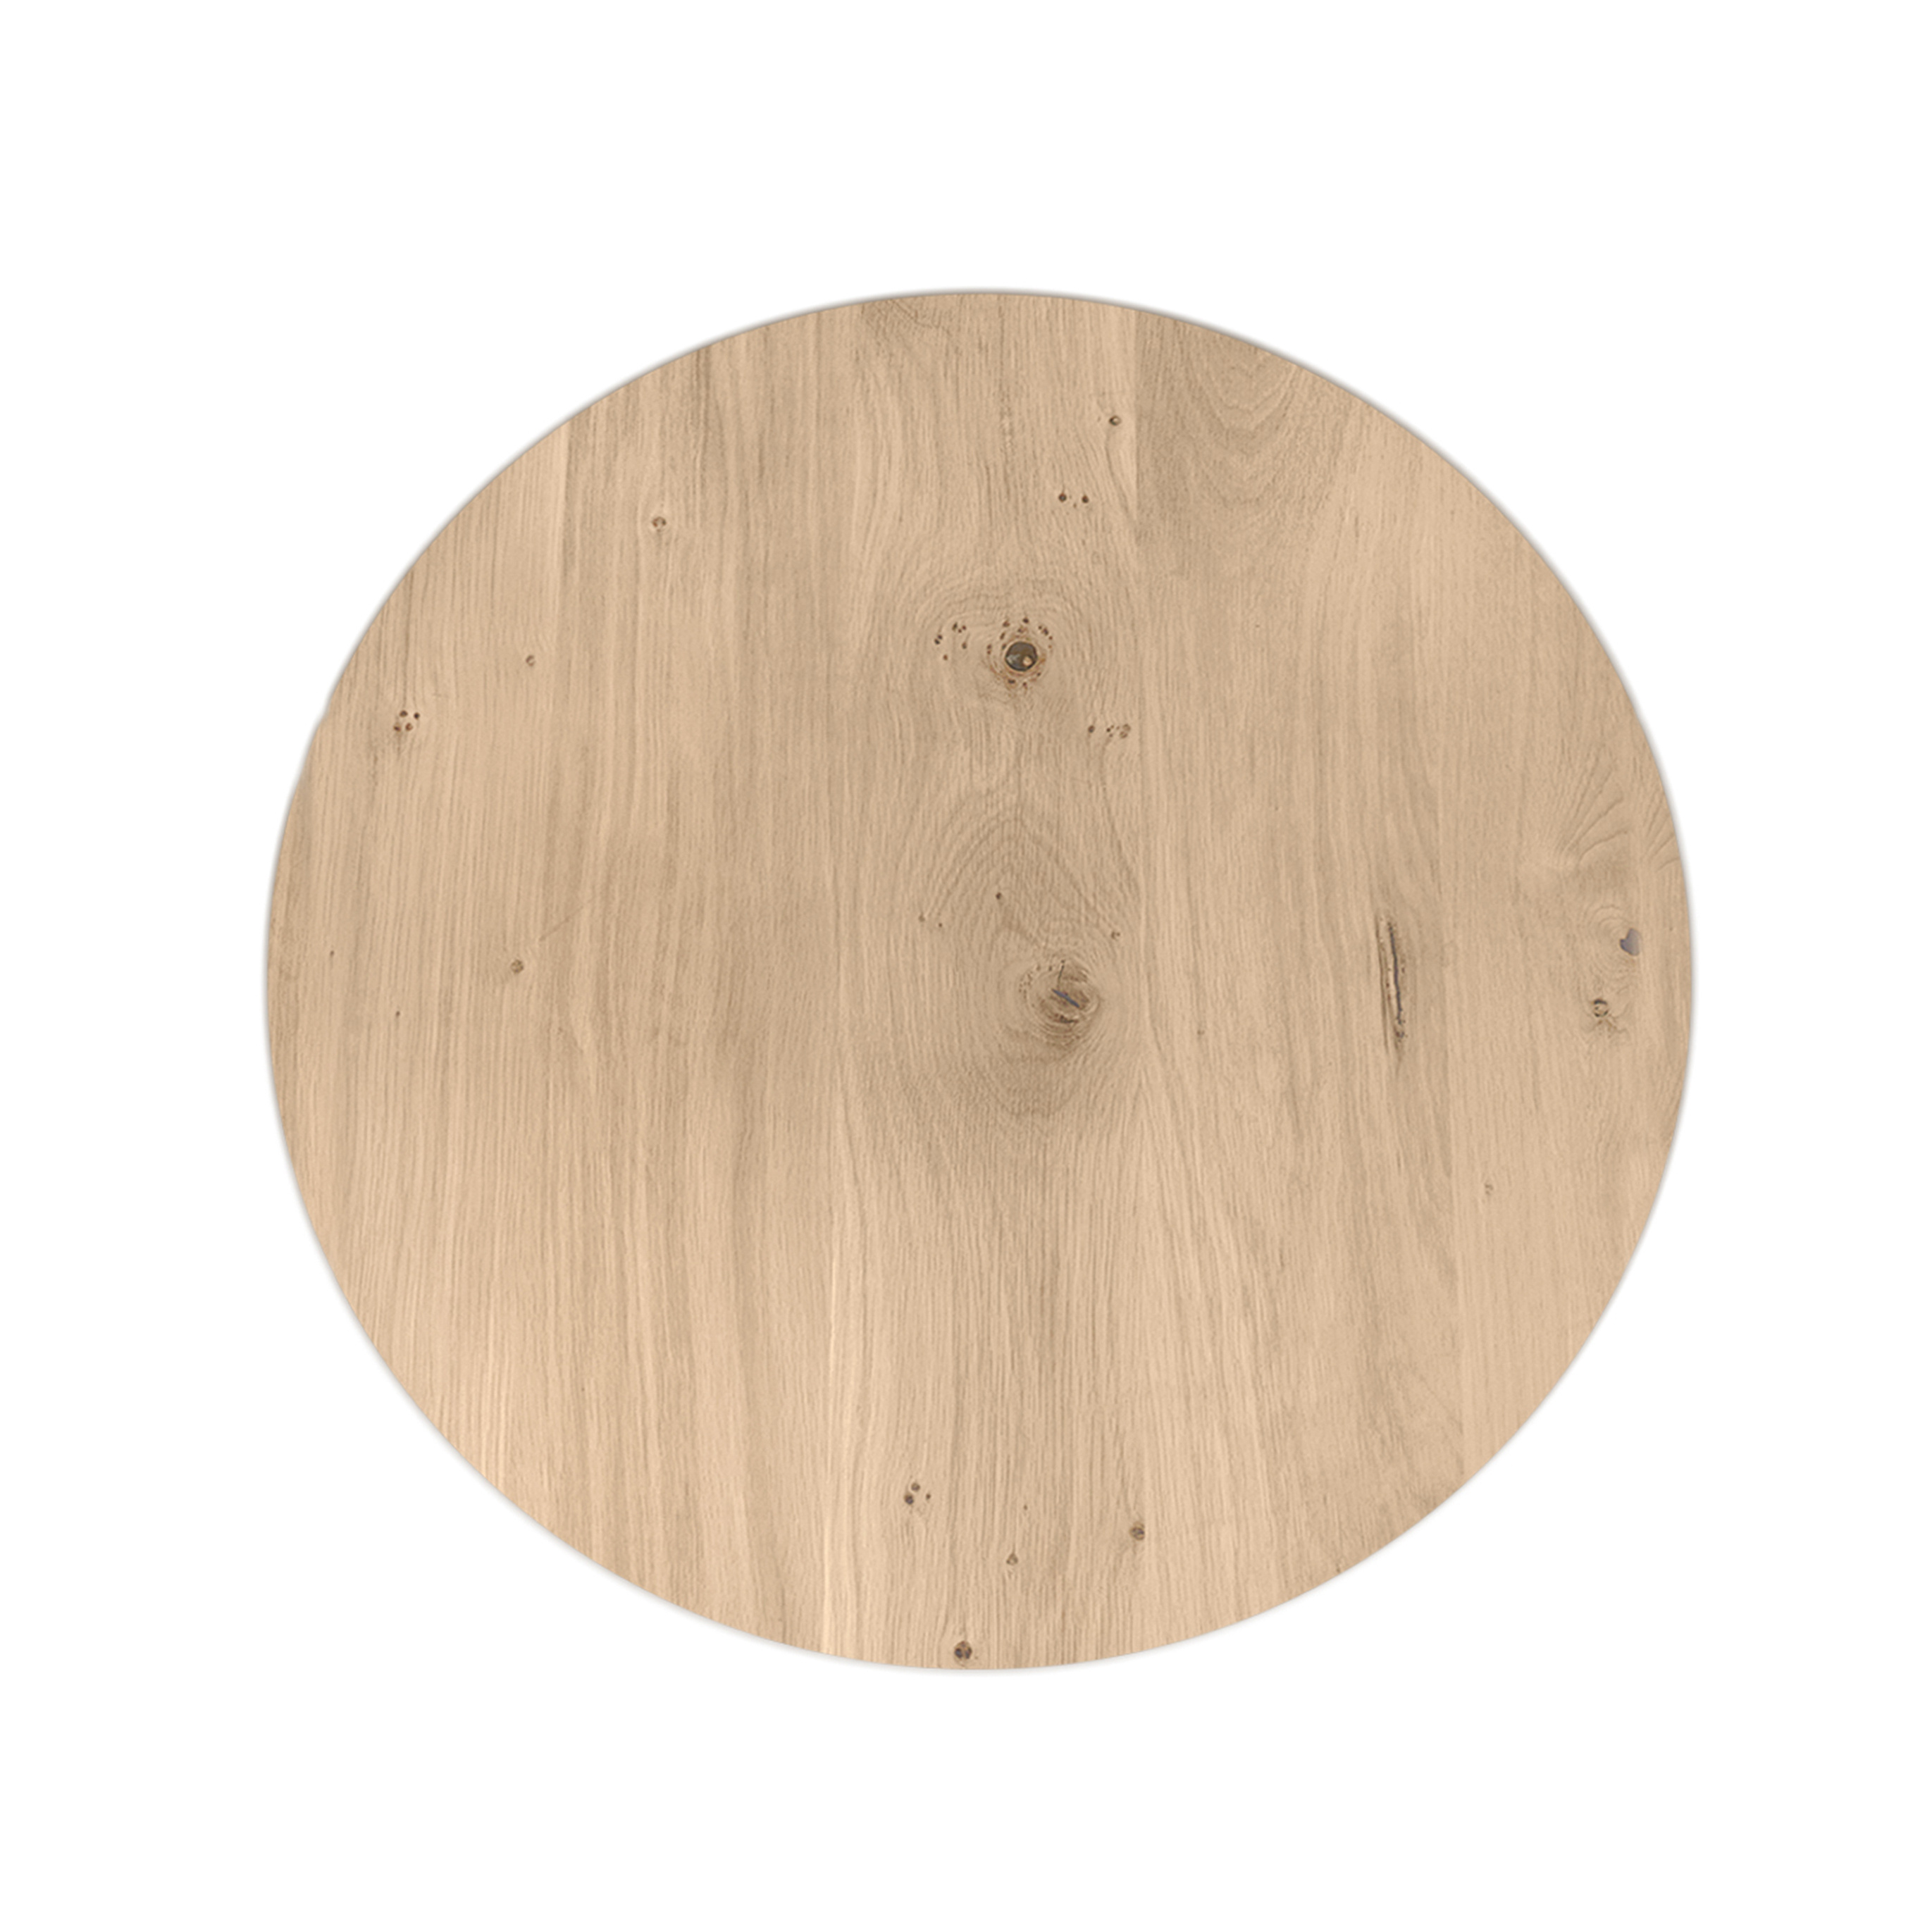  Tischplatte Wildeiche rund - 4 cm dick (1-Schicht) - XXL Lamellen (14-20 cm breit) - Asteiche (rustikal) - verleimt & künstlich getrocknet (HF 8-12%) - verschiedene Größen